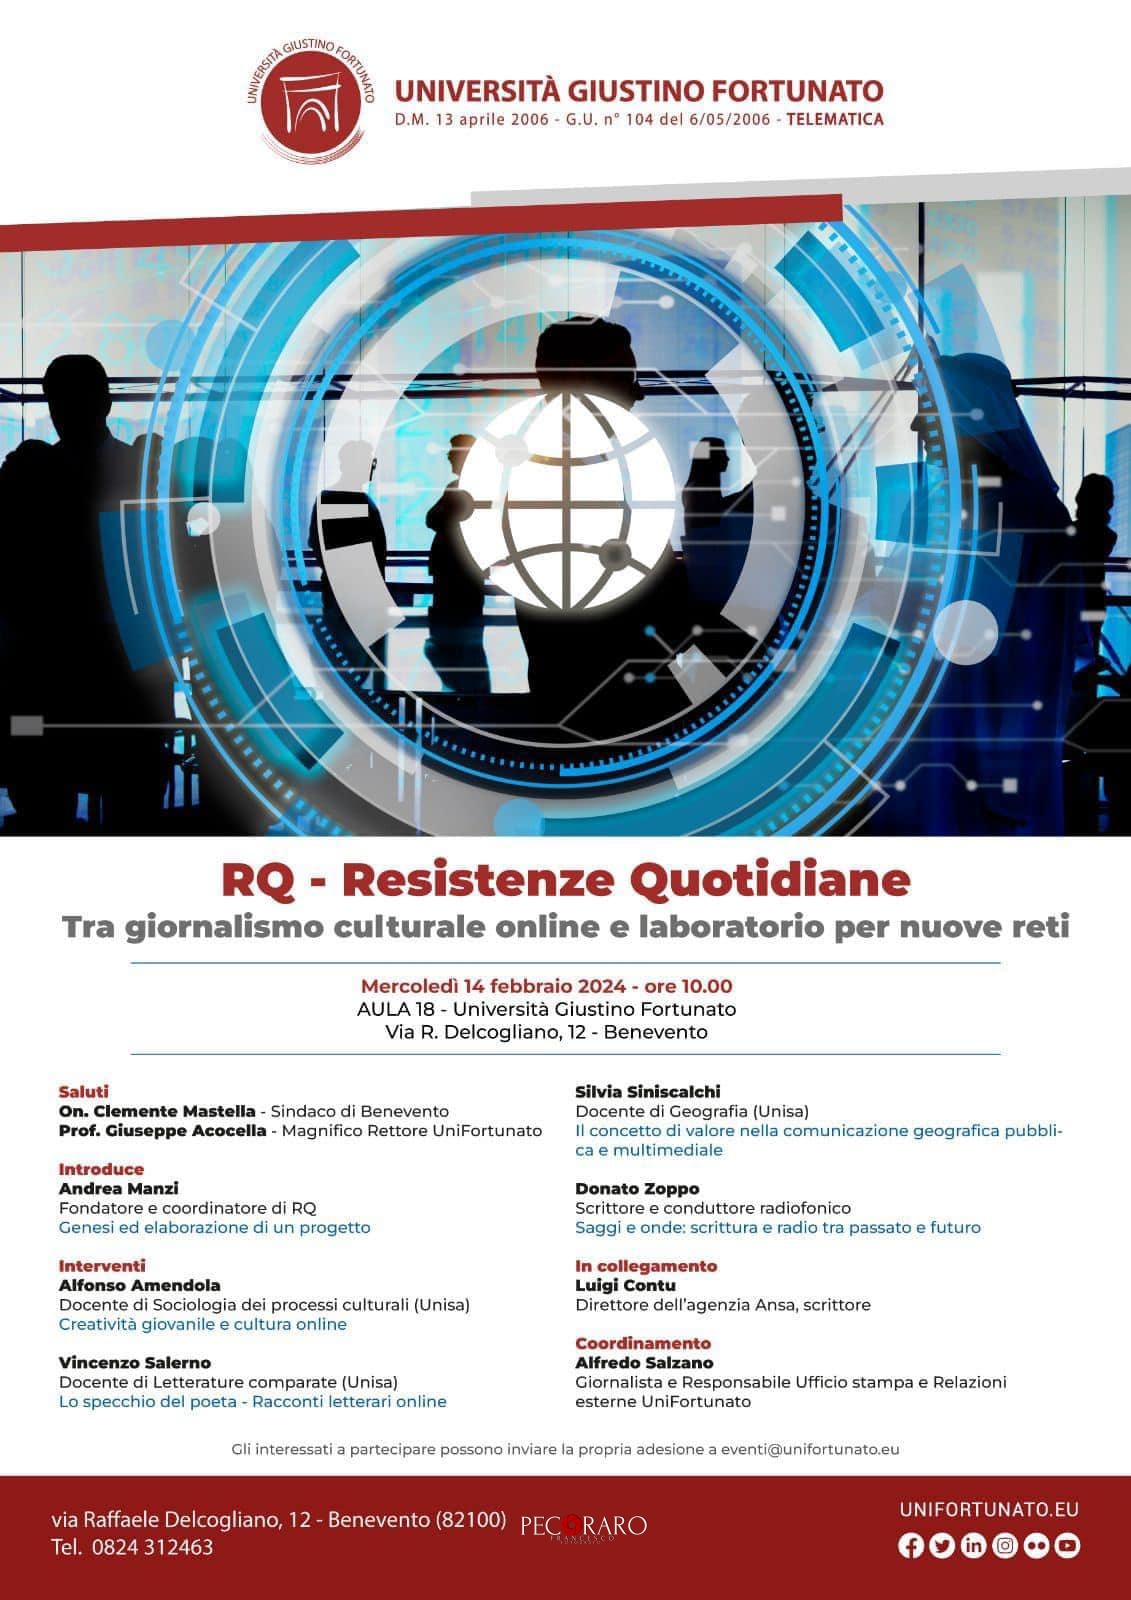 RQ-Resistenze Quotidiane, tra giornalismo culturale online e laboratorio  per nuove reti”